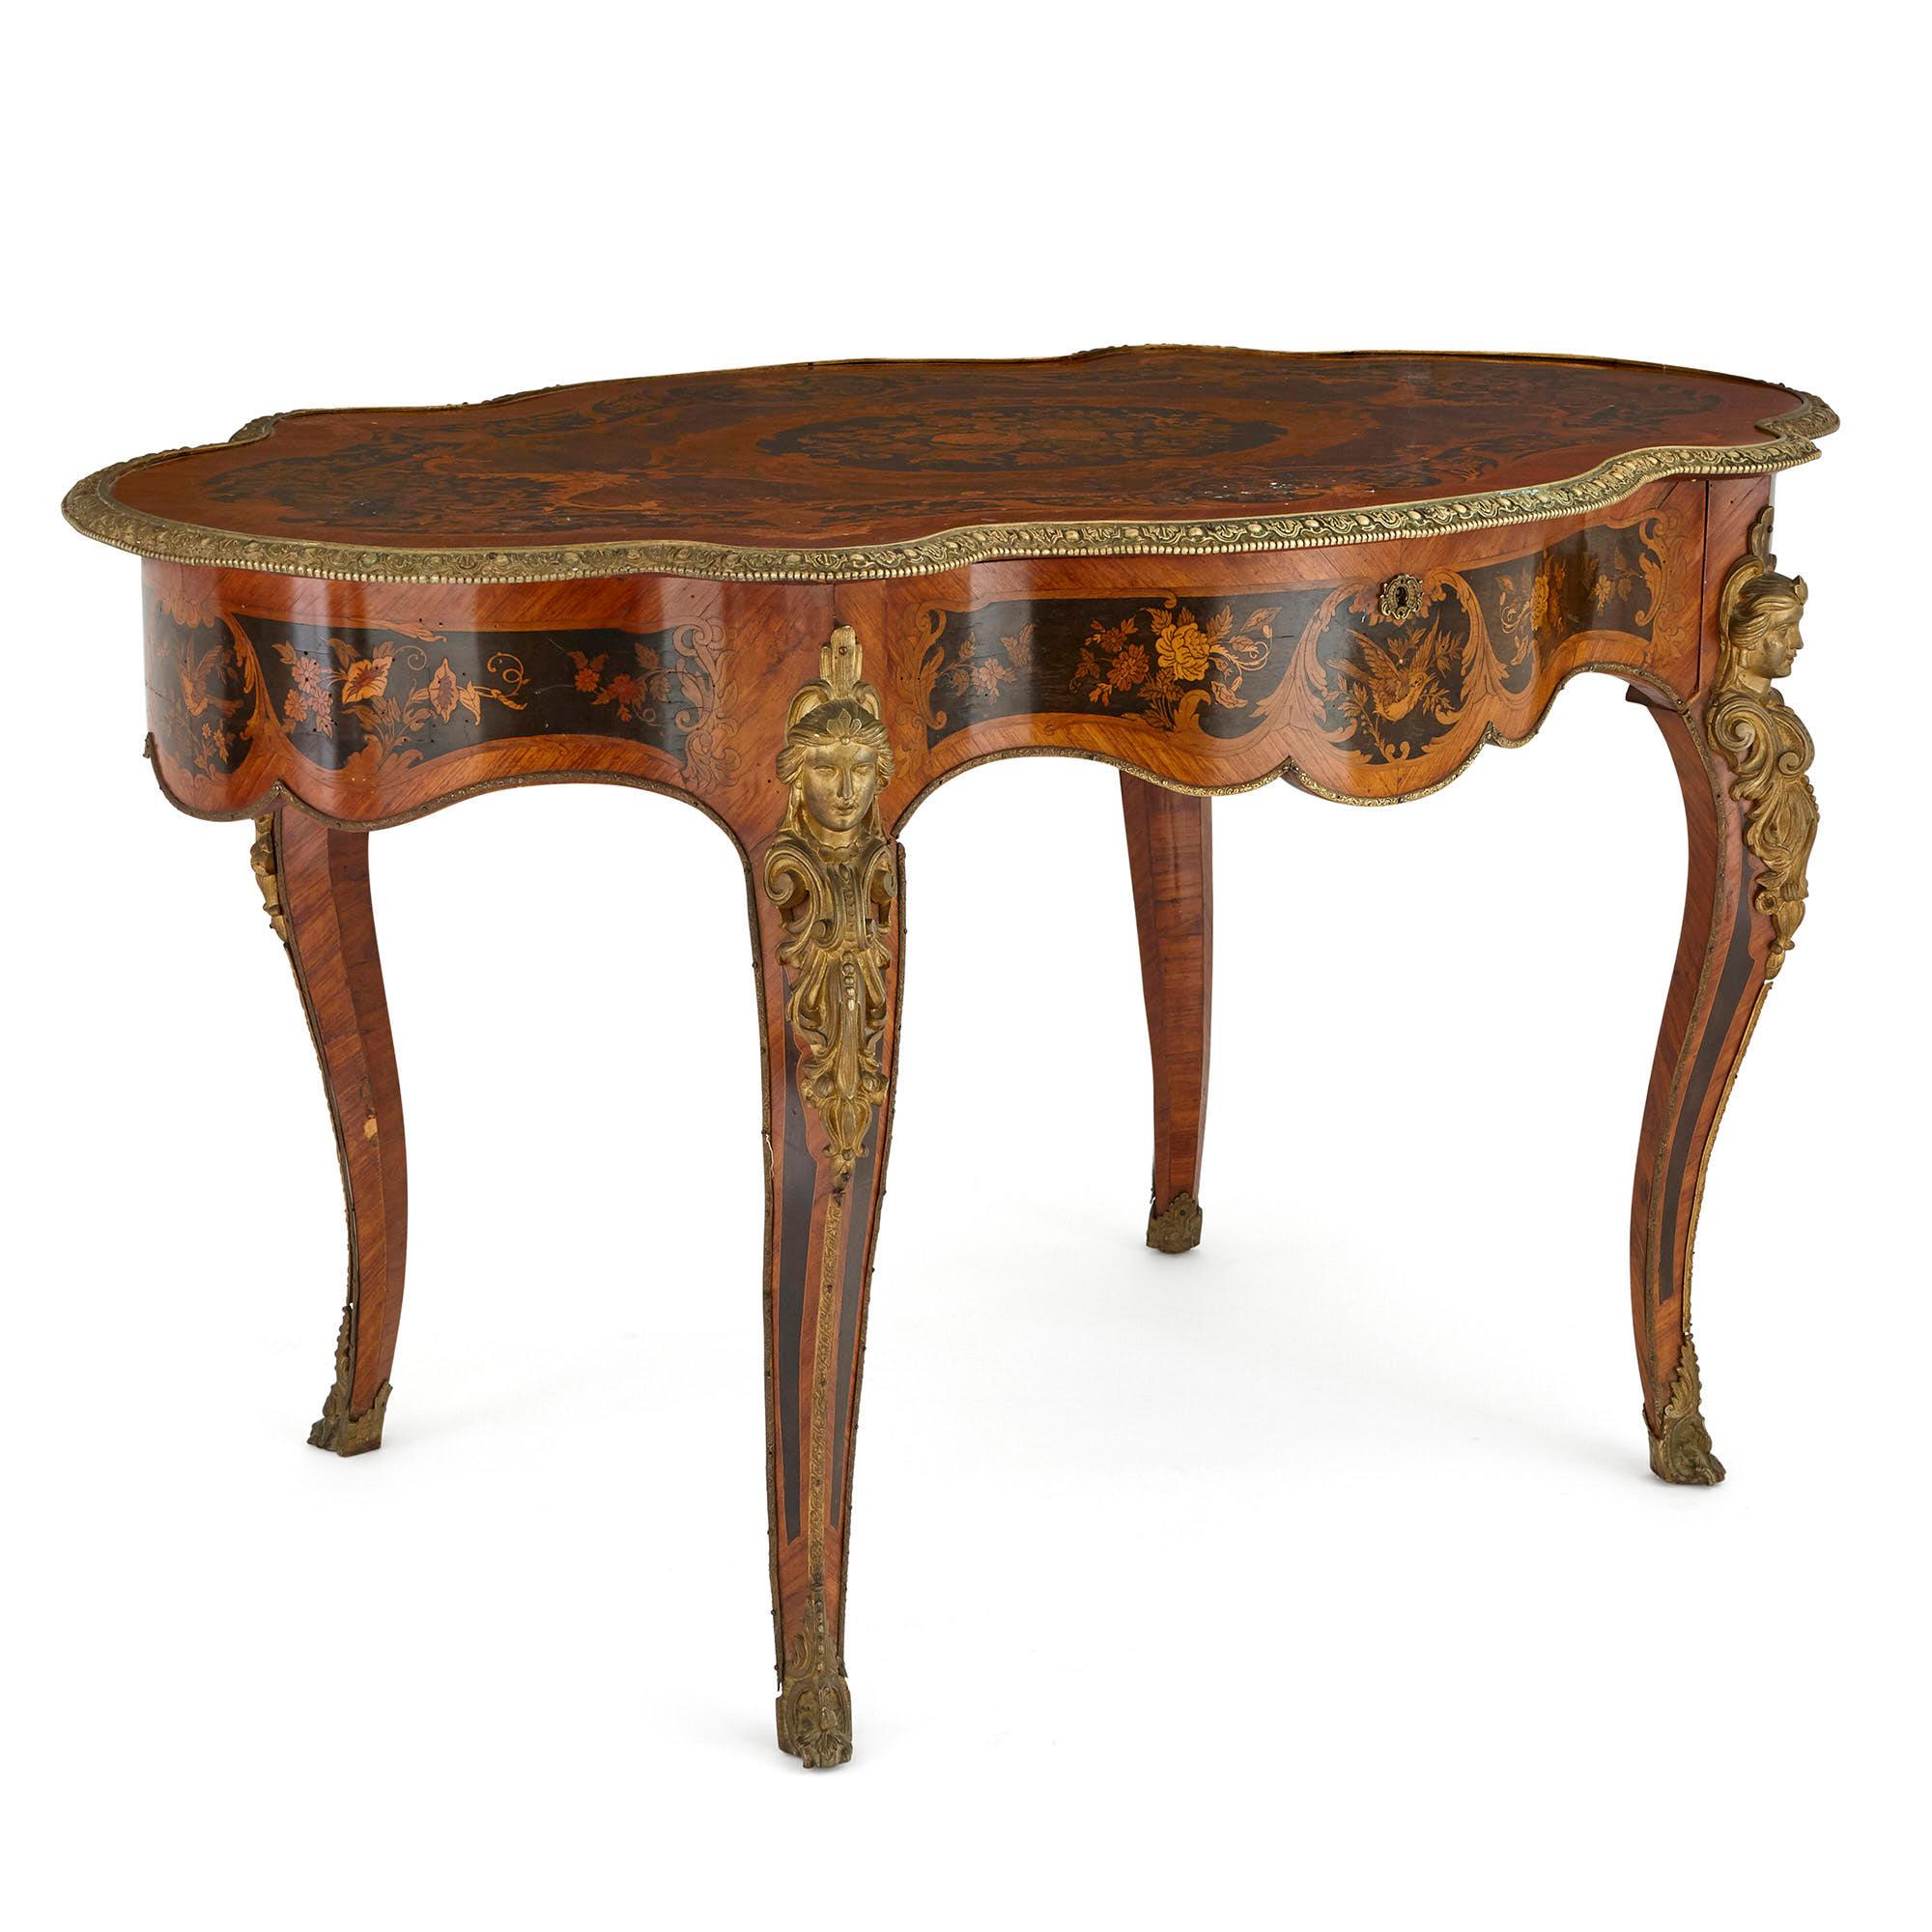 Dieser Tisch ist ein exquisites Stück französischer Antiquitäten. Der Tisch ist mit schönen Intarsienarbeiten und fein gegossenen Beschlägen aus vergoldeter Bronze (Ormolu) versehen. 

Der Tisch hat eine ovale Platte, die mit Bändern verziert ist,